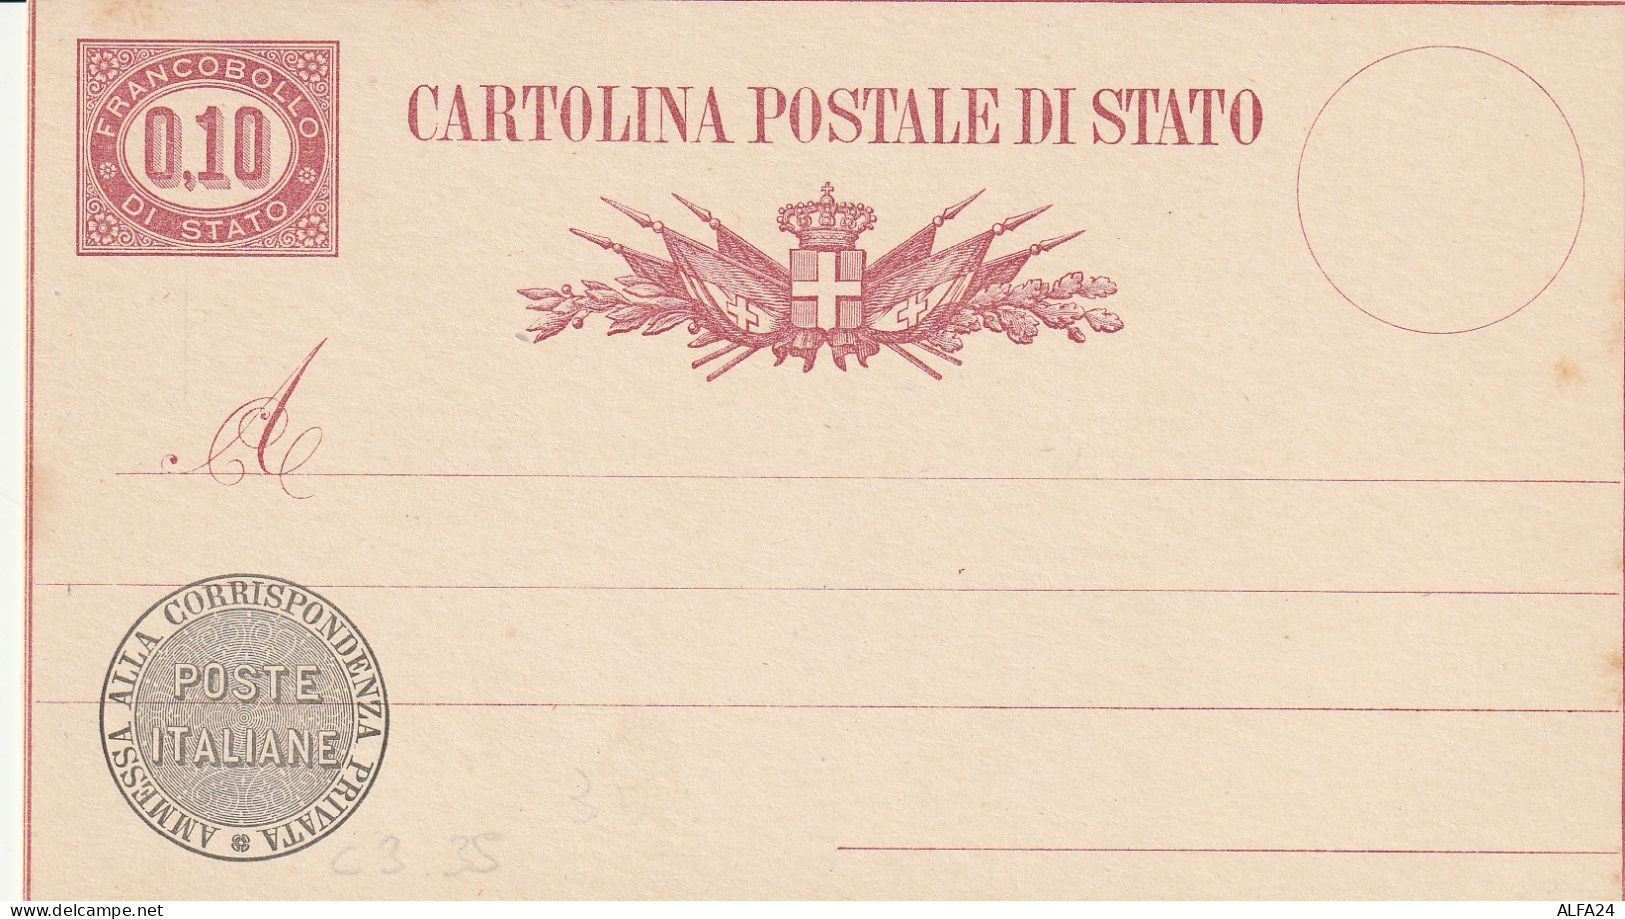 INTERO POSTALE NUOVO C.10 DI STATO 1875 (ZP3609 - Stamped Stationery